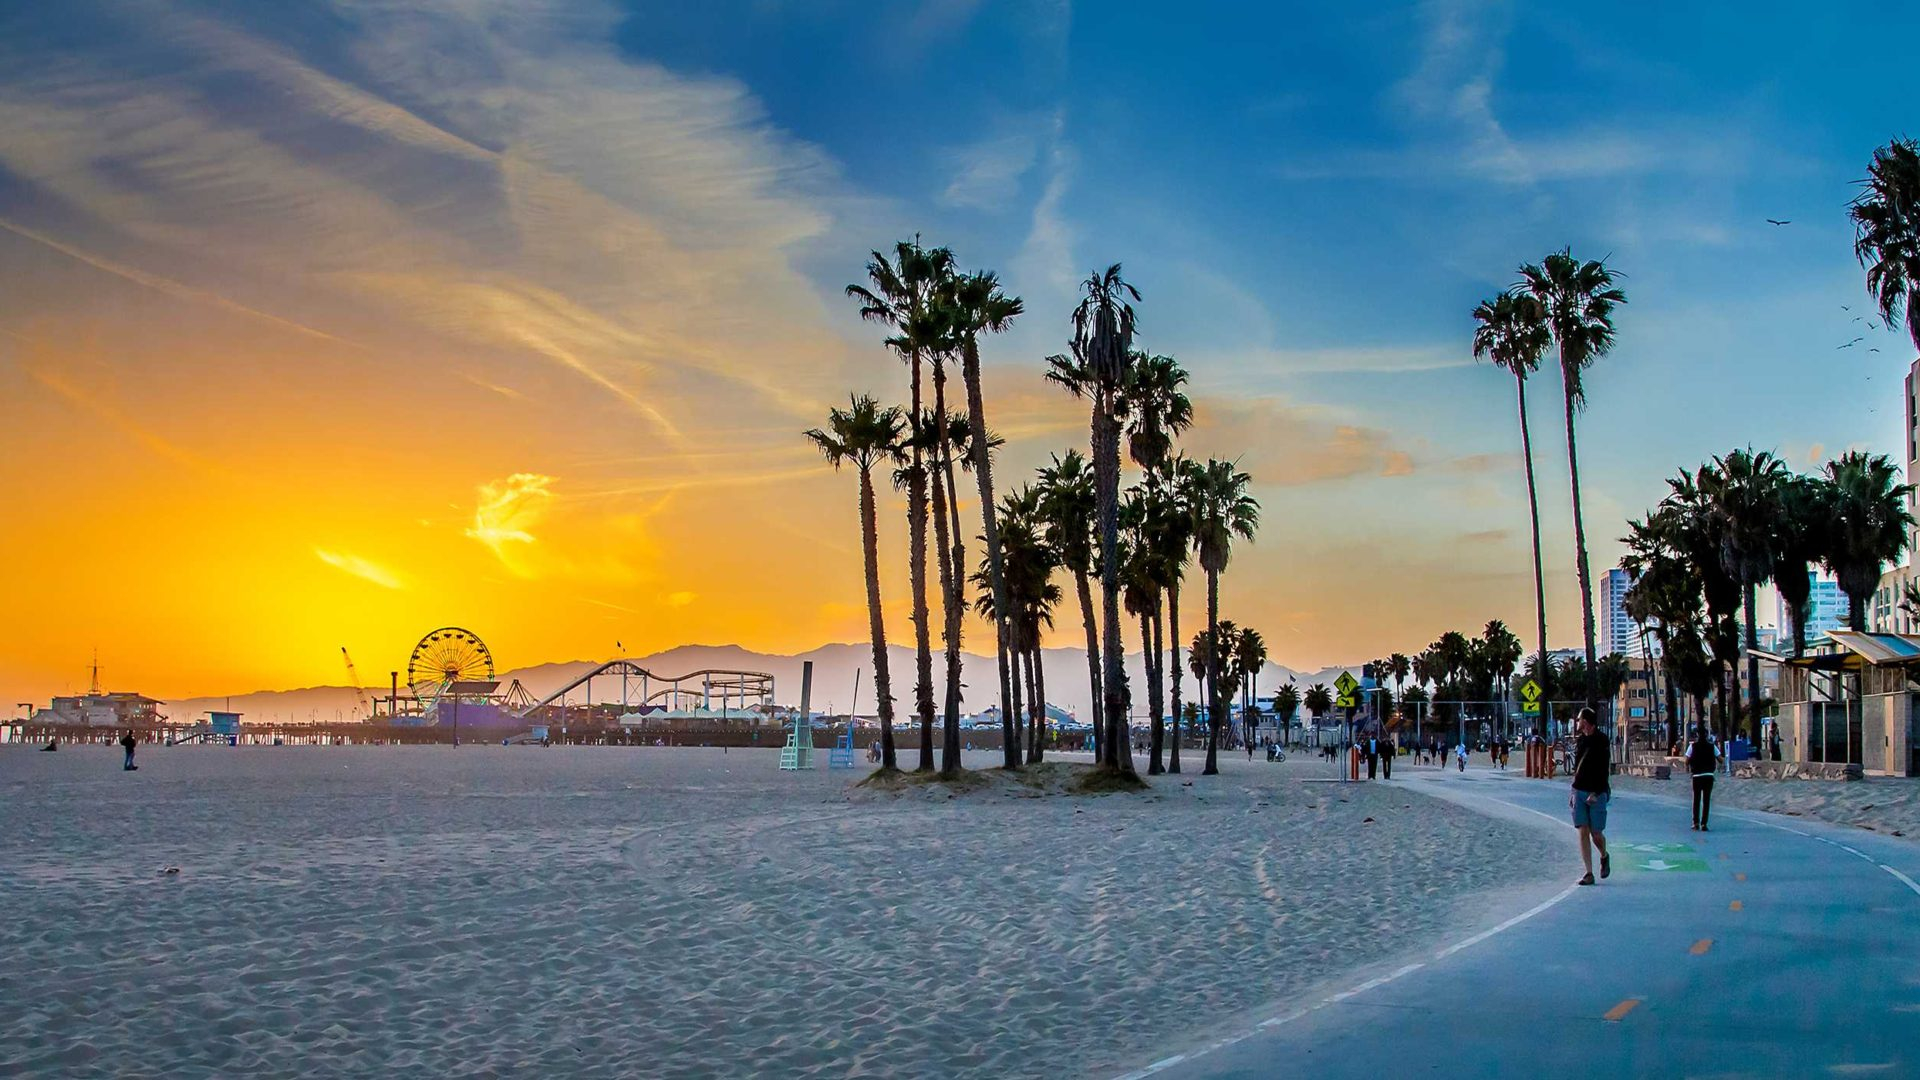 1920x1080 City Santa Monica Pacific Pier Venice Beach in California hd KDE Store